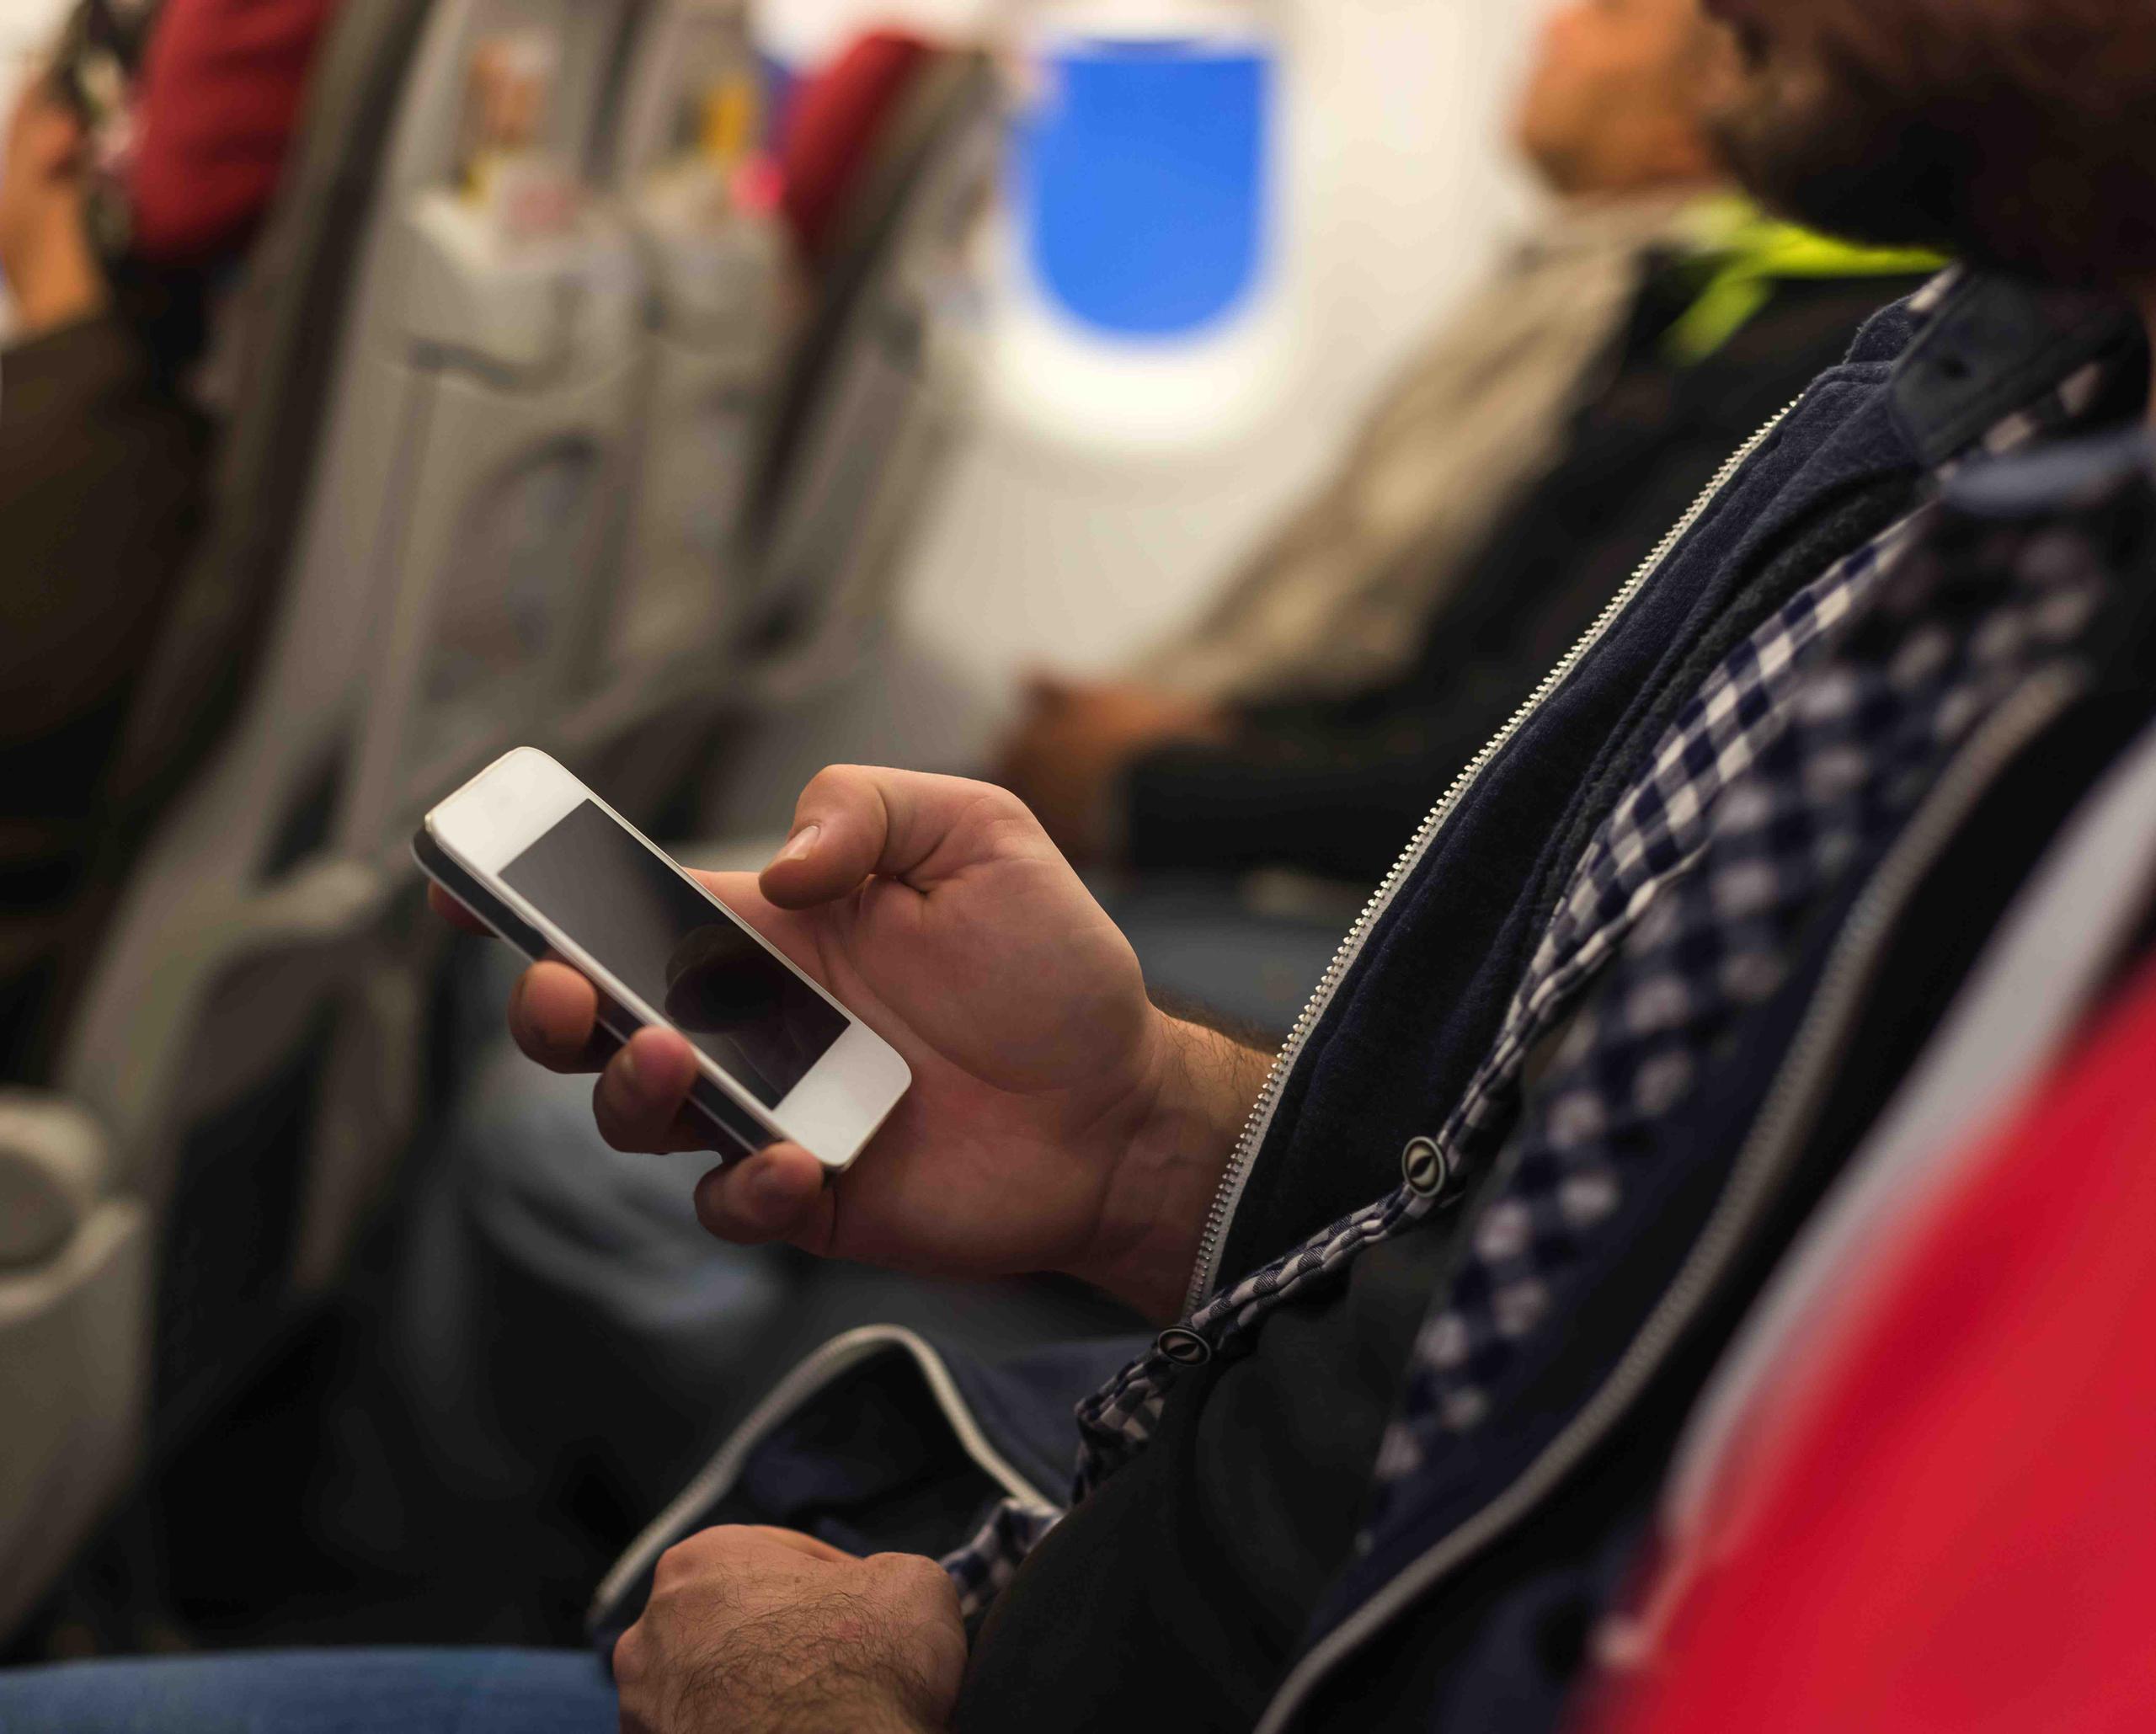 Hoy, 8 de mayo de 2015, un fallo del tribunal  federal de apelaciones determinó que la FAA tenía facultad de autorizar el uso de teléfonos celulares en los aviones durante los despegues y aterrizajes. (Shutterstock.com)